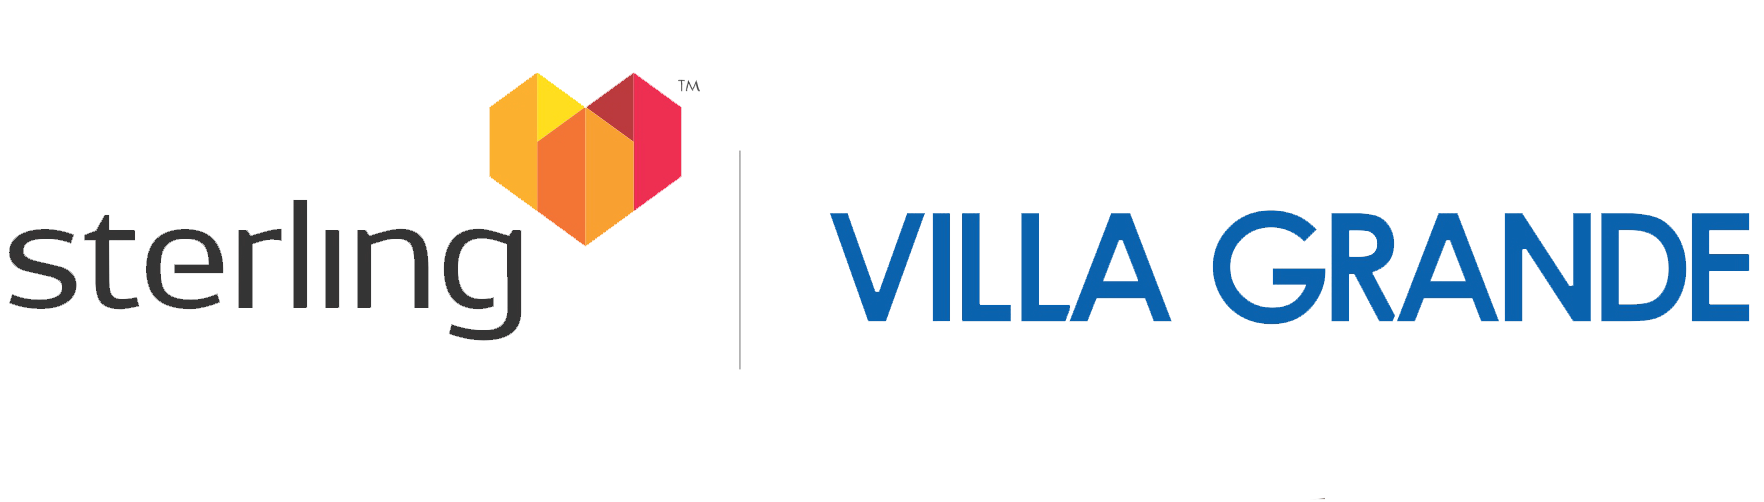 Sterling Villa Grande Logo 